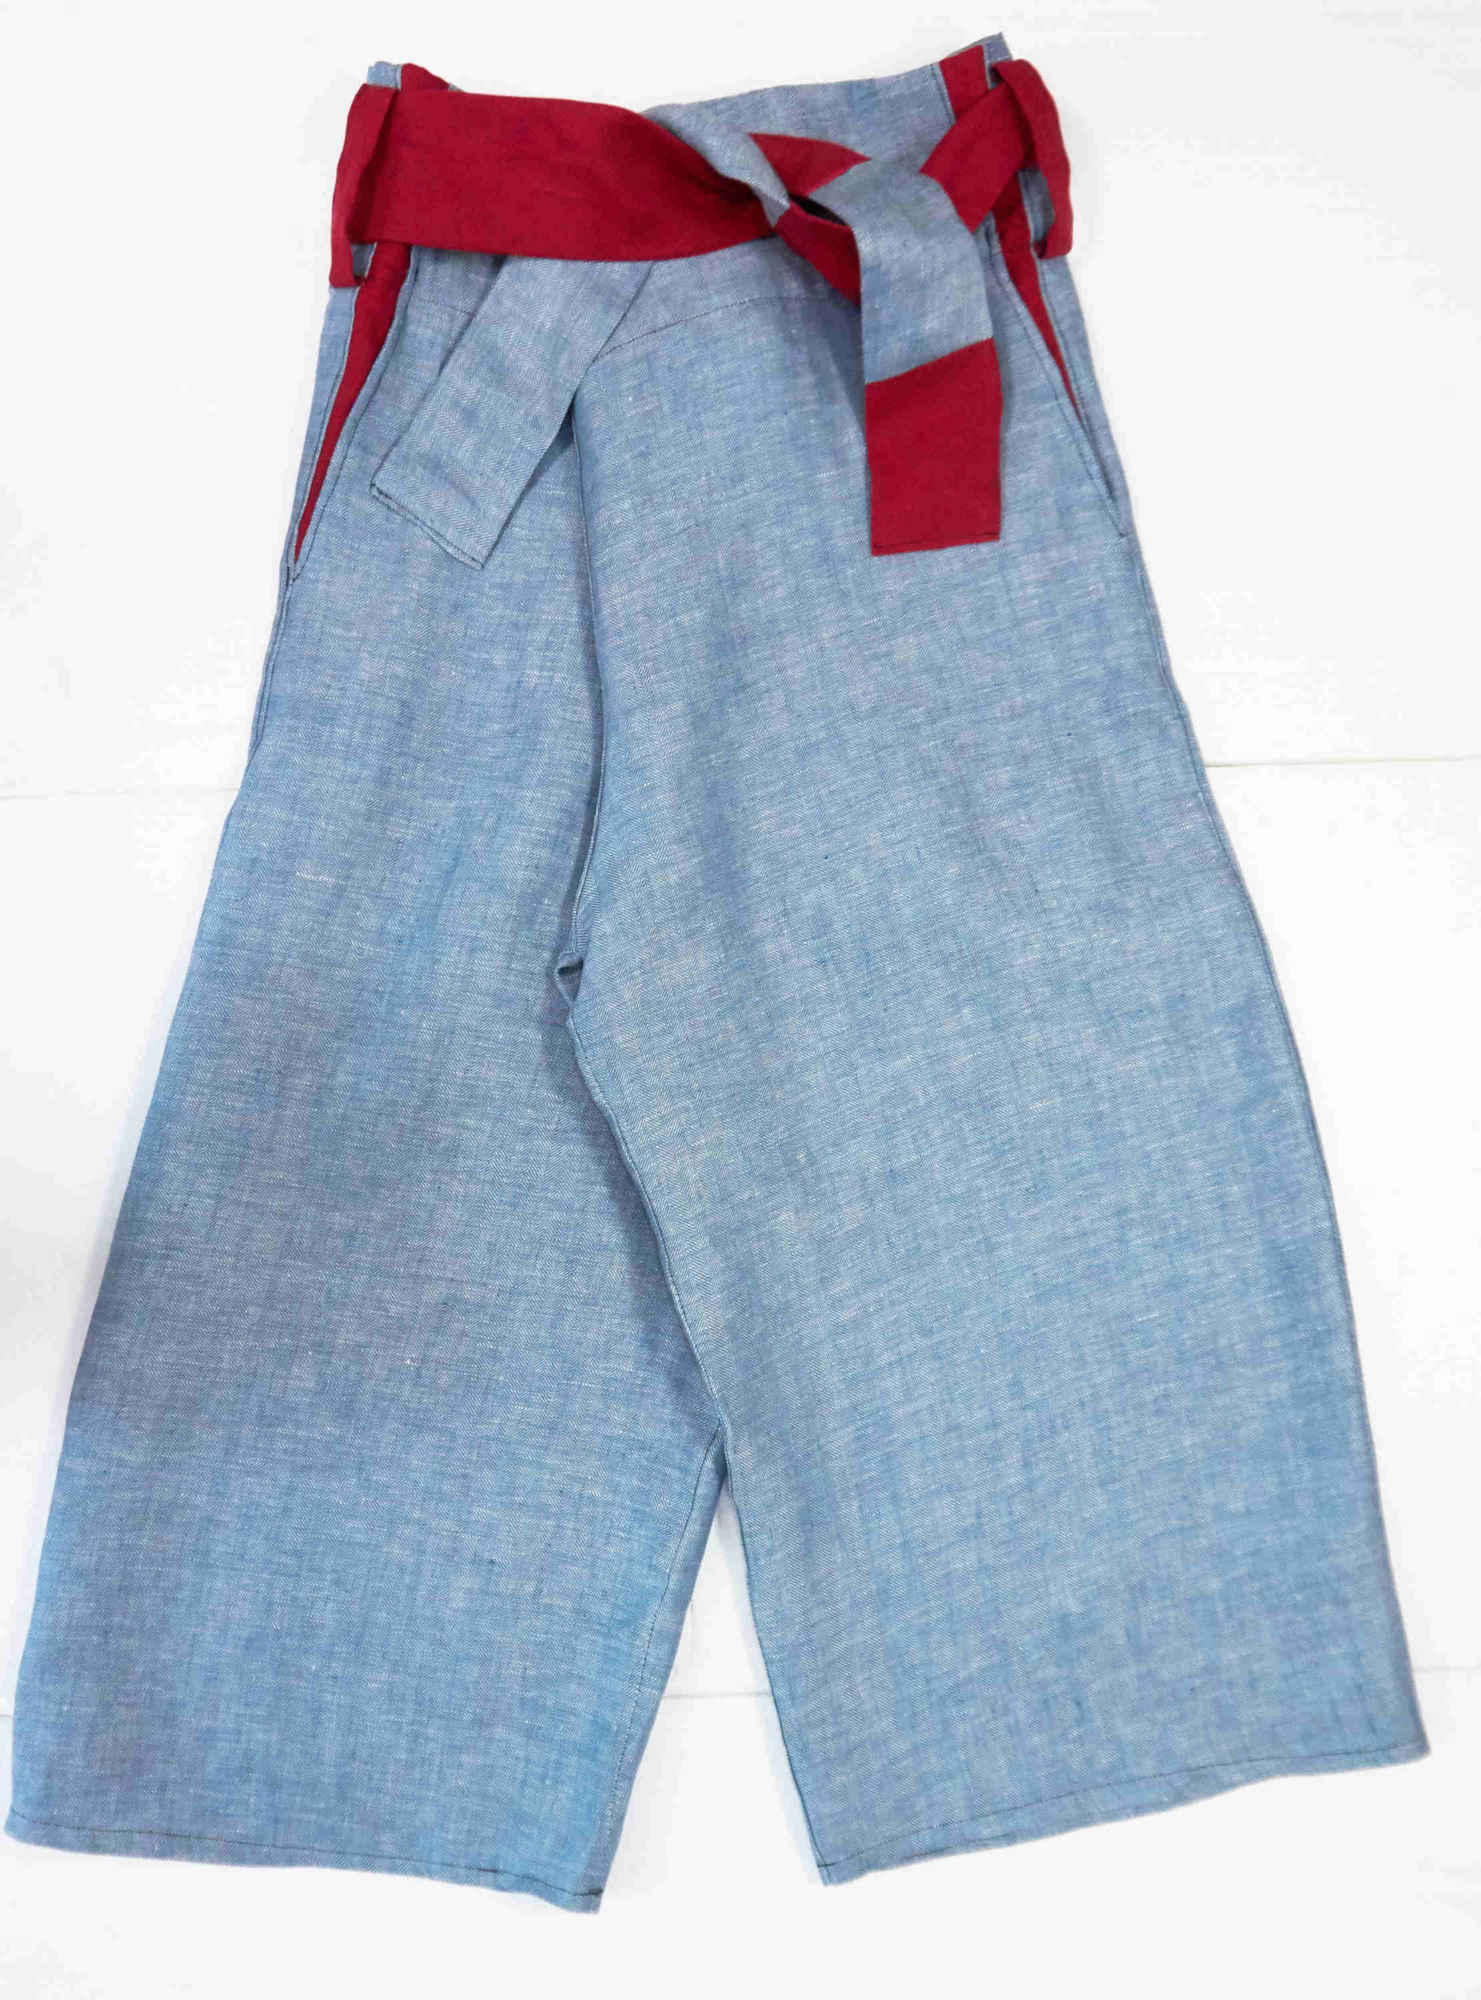 pantaloni taglia unica con lacci